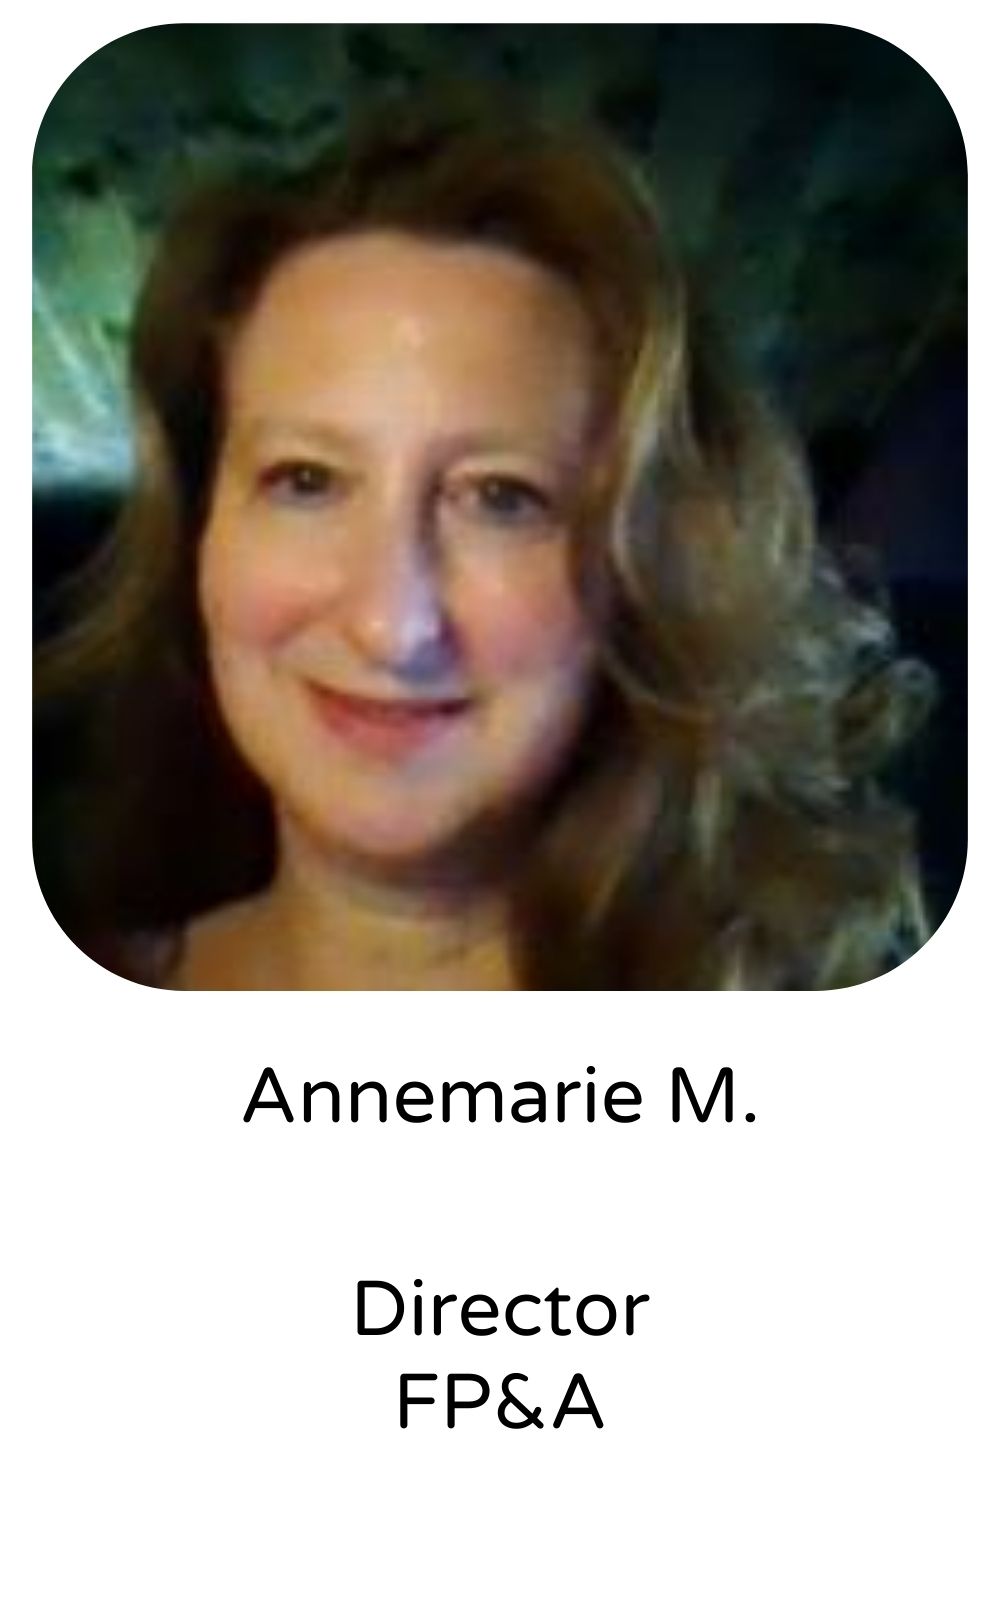 Annemarie M, Director, FP&A